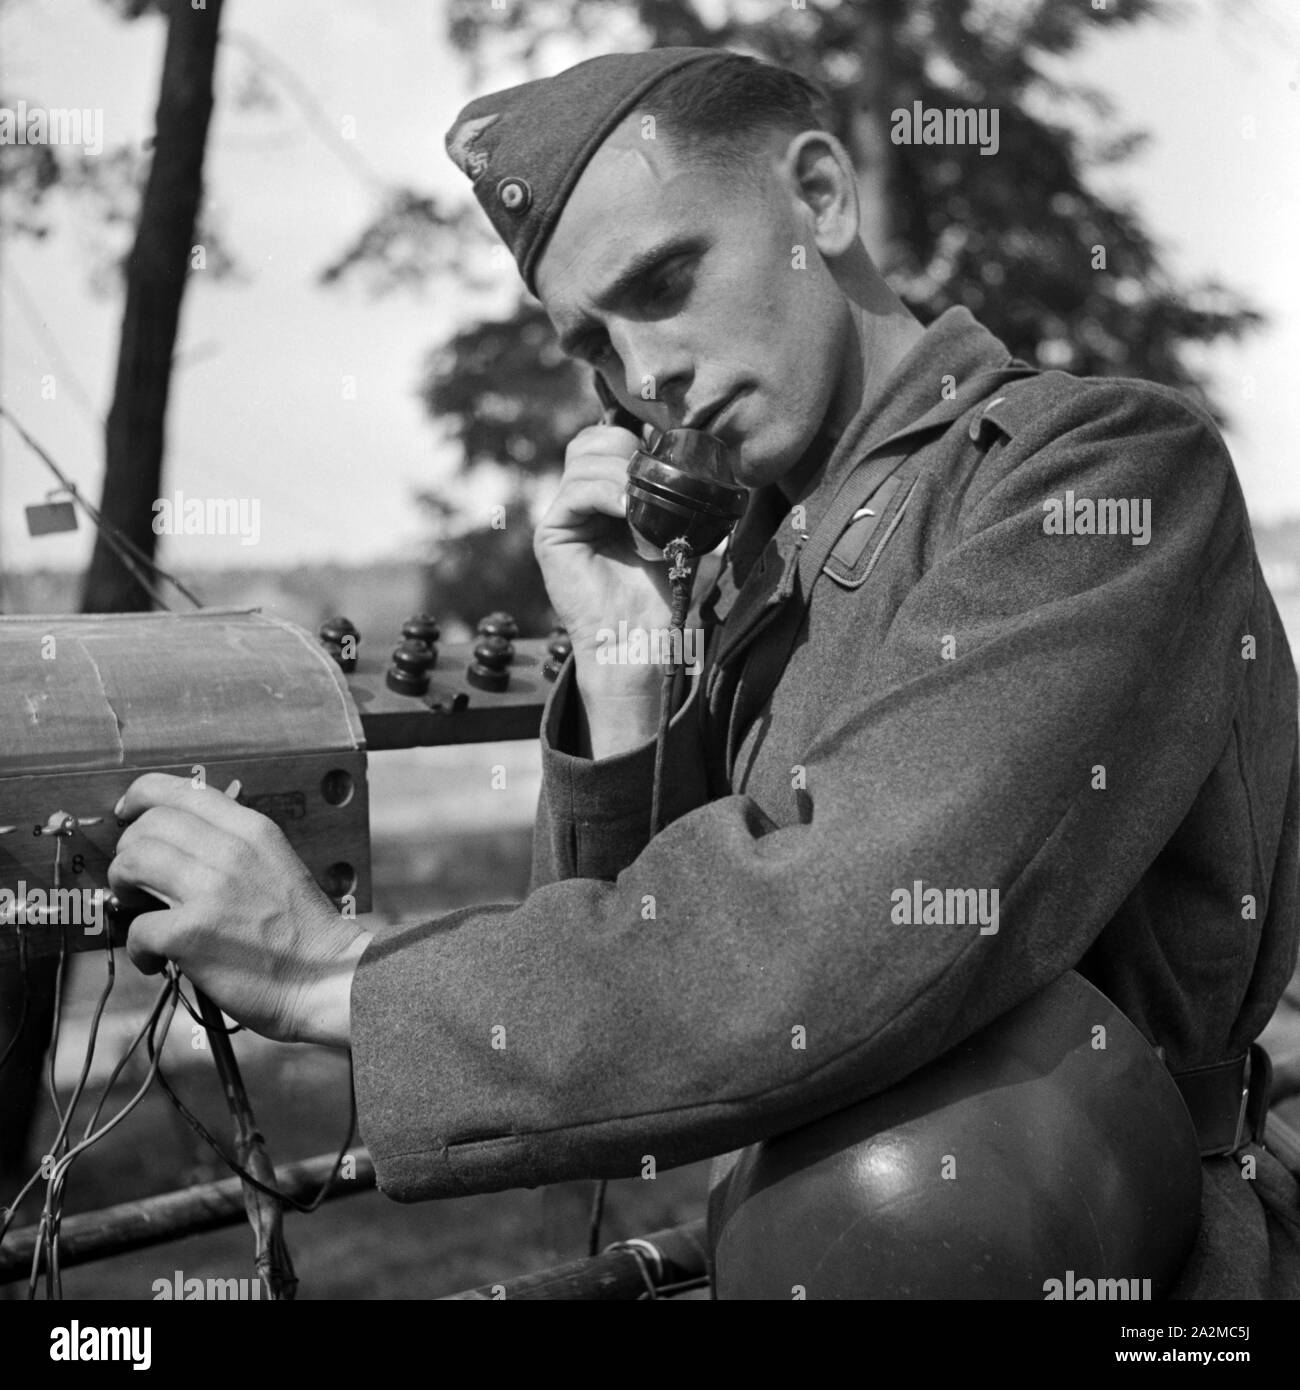 Original-Bildunterschrift: Soldat eines Fernsprechtrupps bei der Arbeit, Deutschland 1940er Jahre. Soldato di un gruppo telefonico al lavoro, Germania 1940s. Foto Stock